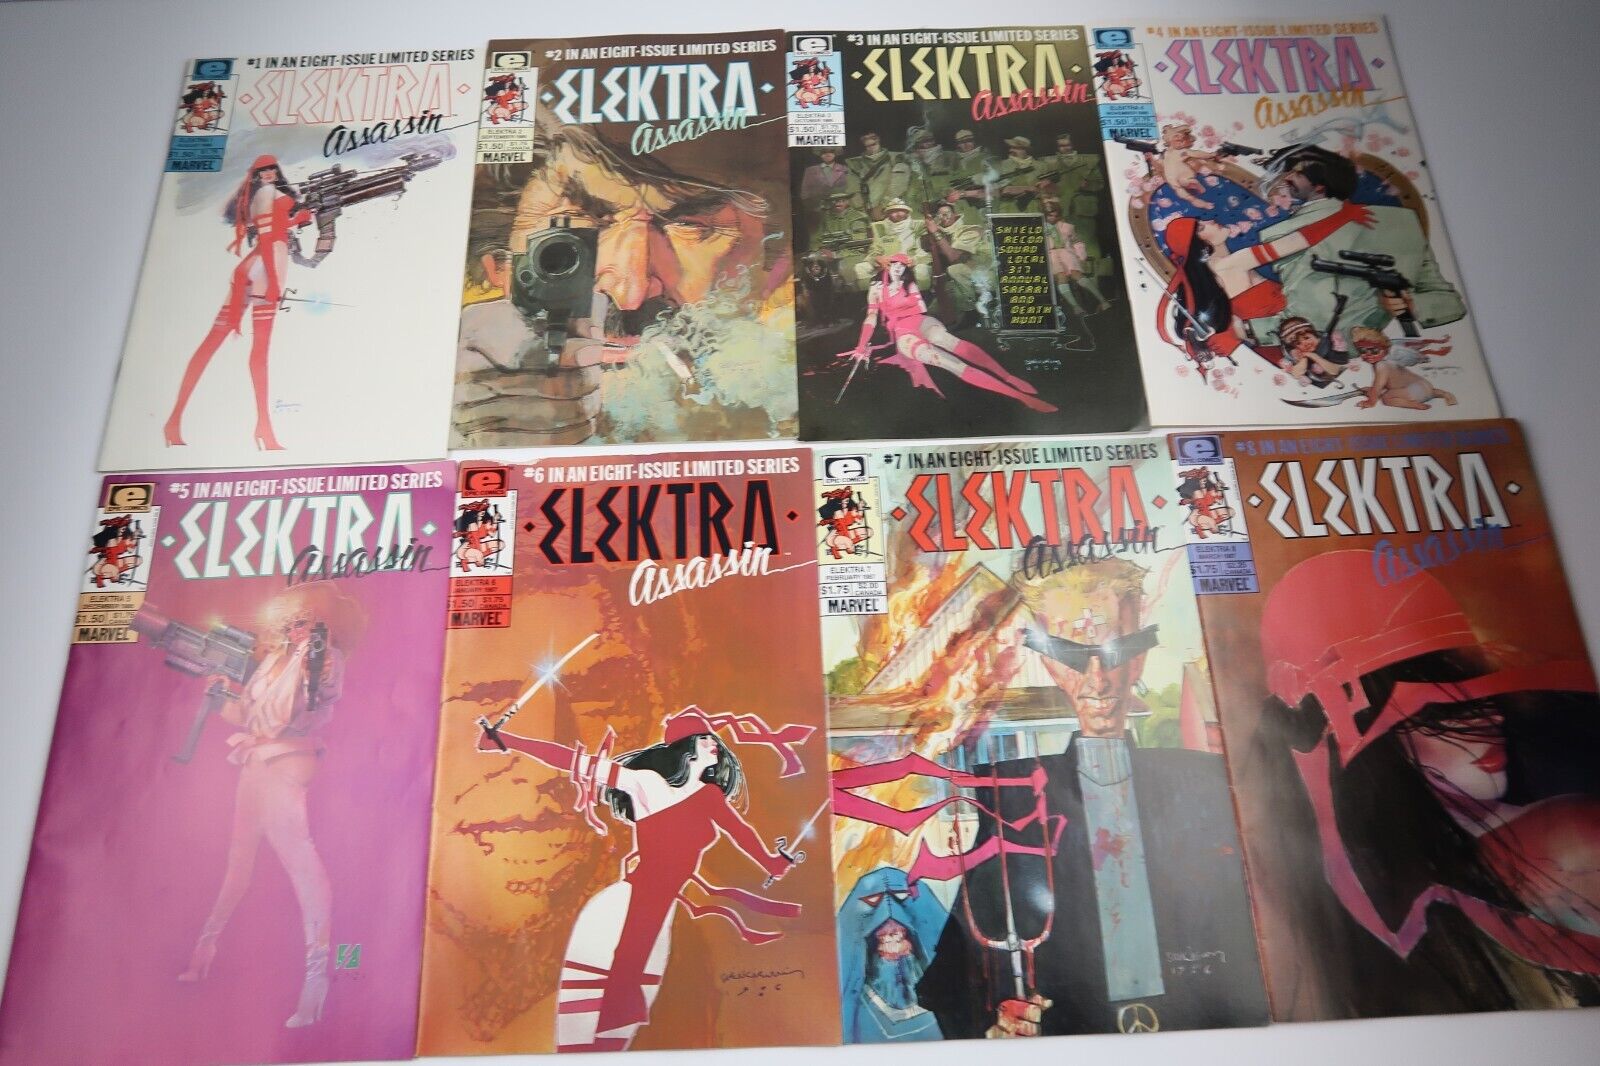 ELEKTRA ASSASSIN #1 2 3 4 5 6 7 8 (Epic Comics 1986) Complete Run 1-8 F/VF/NM